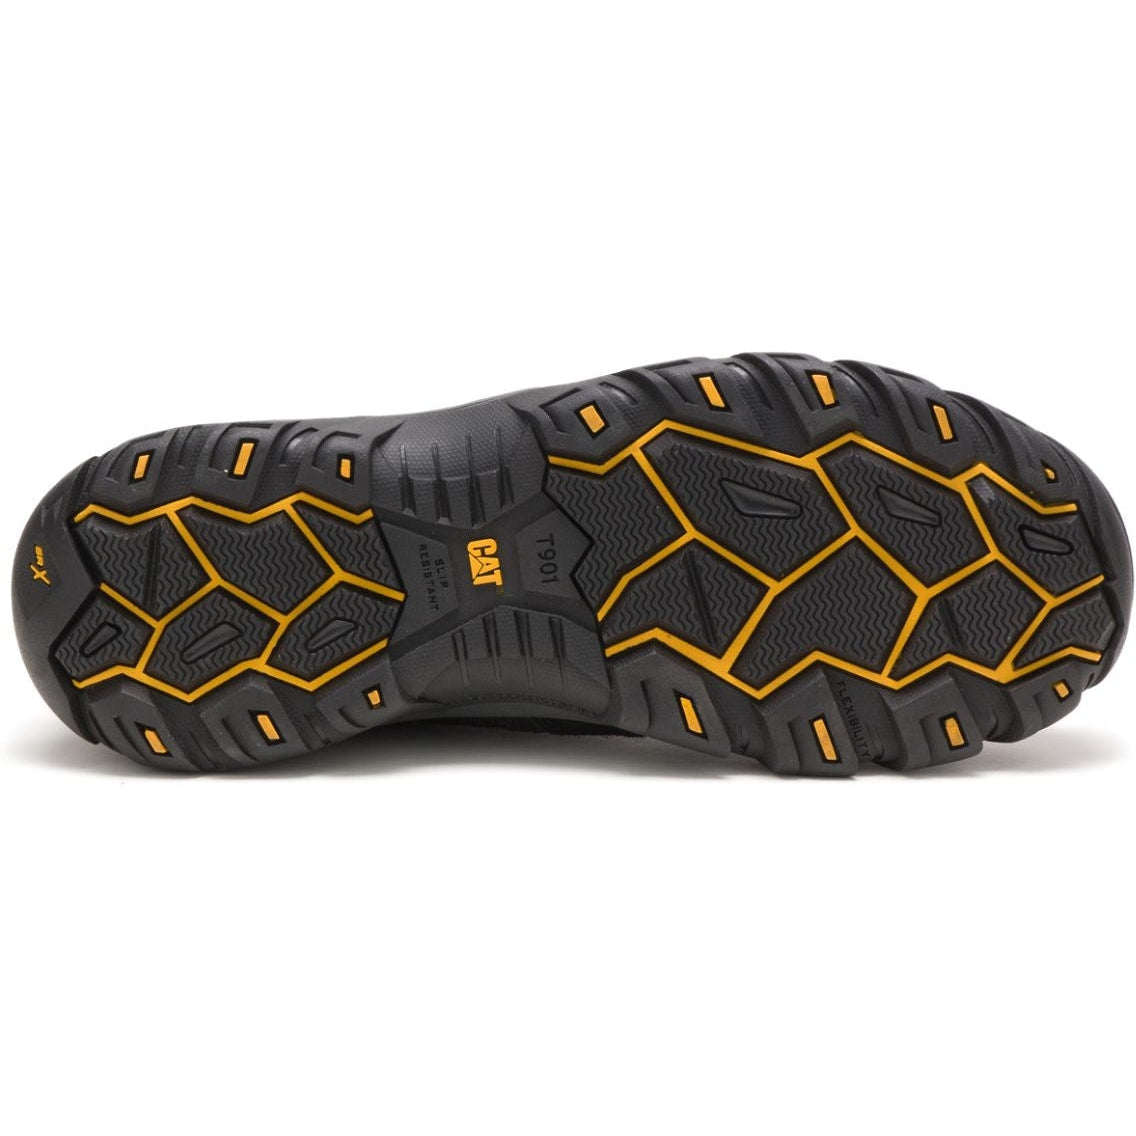 CAT Men's Argon Composite Toe Work Shoe - Black - P89955  - Overlook Boots